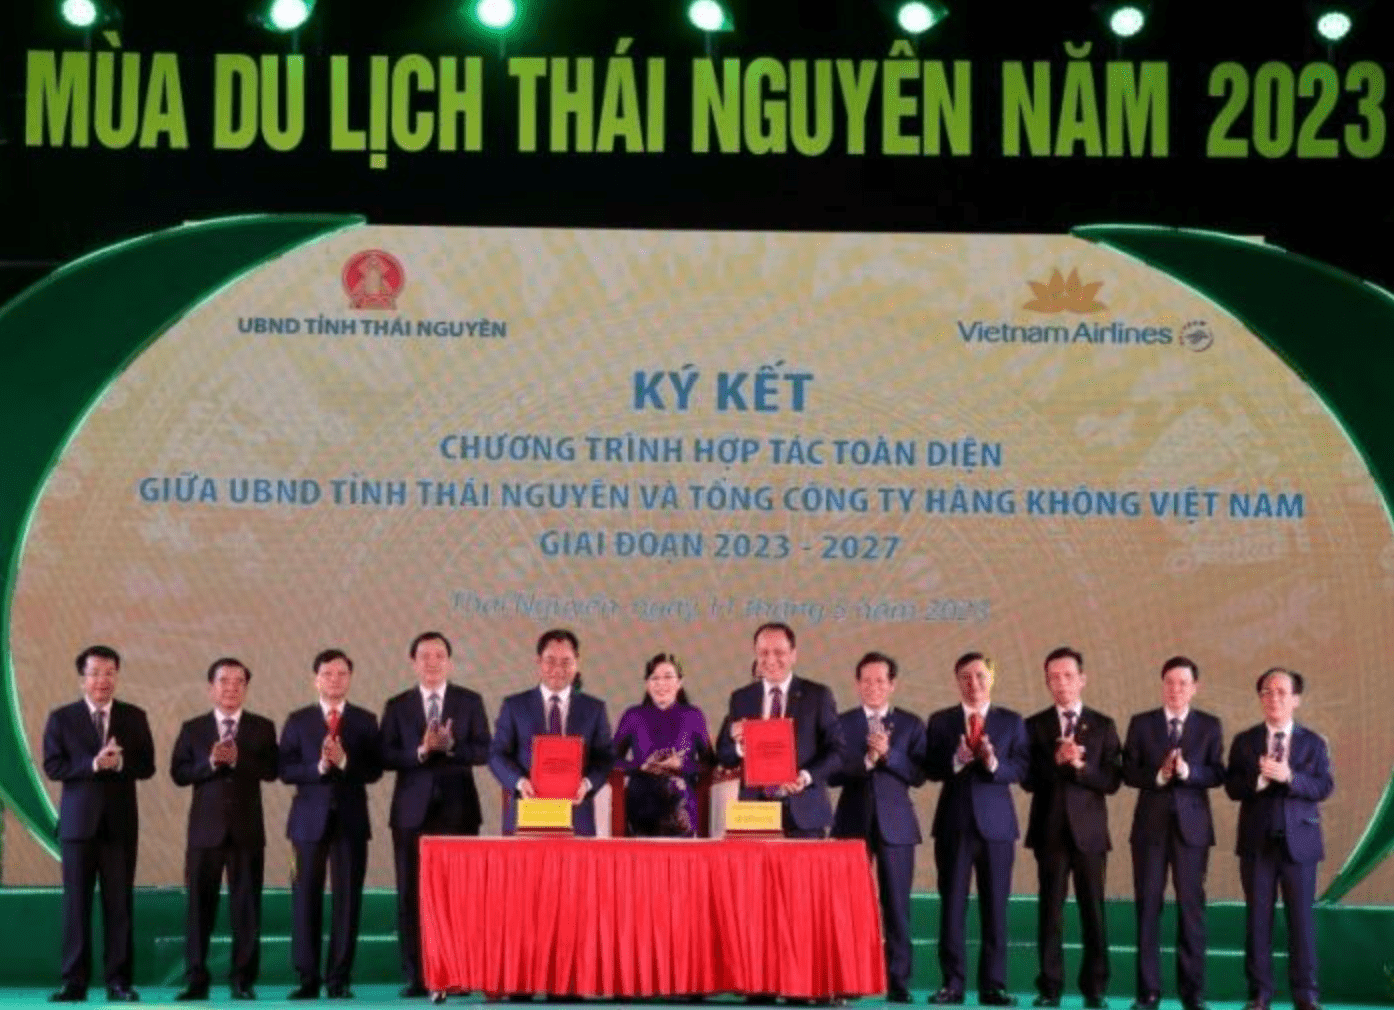 Ông Lê Hồng Hà, Tổng giám đốc Vietnam Airlines và ông Trịnh Việt Hùng, Chủ tịch UBND tỉnh Thái Nguyên ký kết và trao đổi biên bản hợp tác toàn diện.